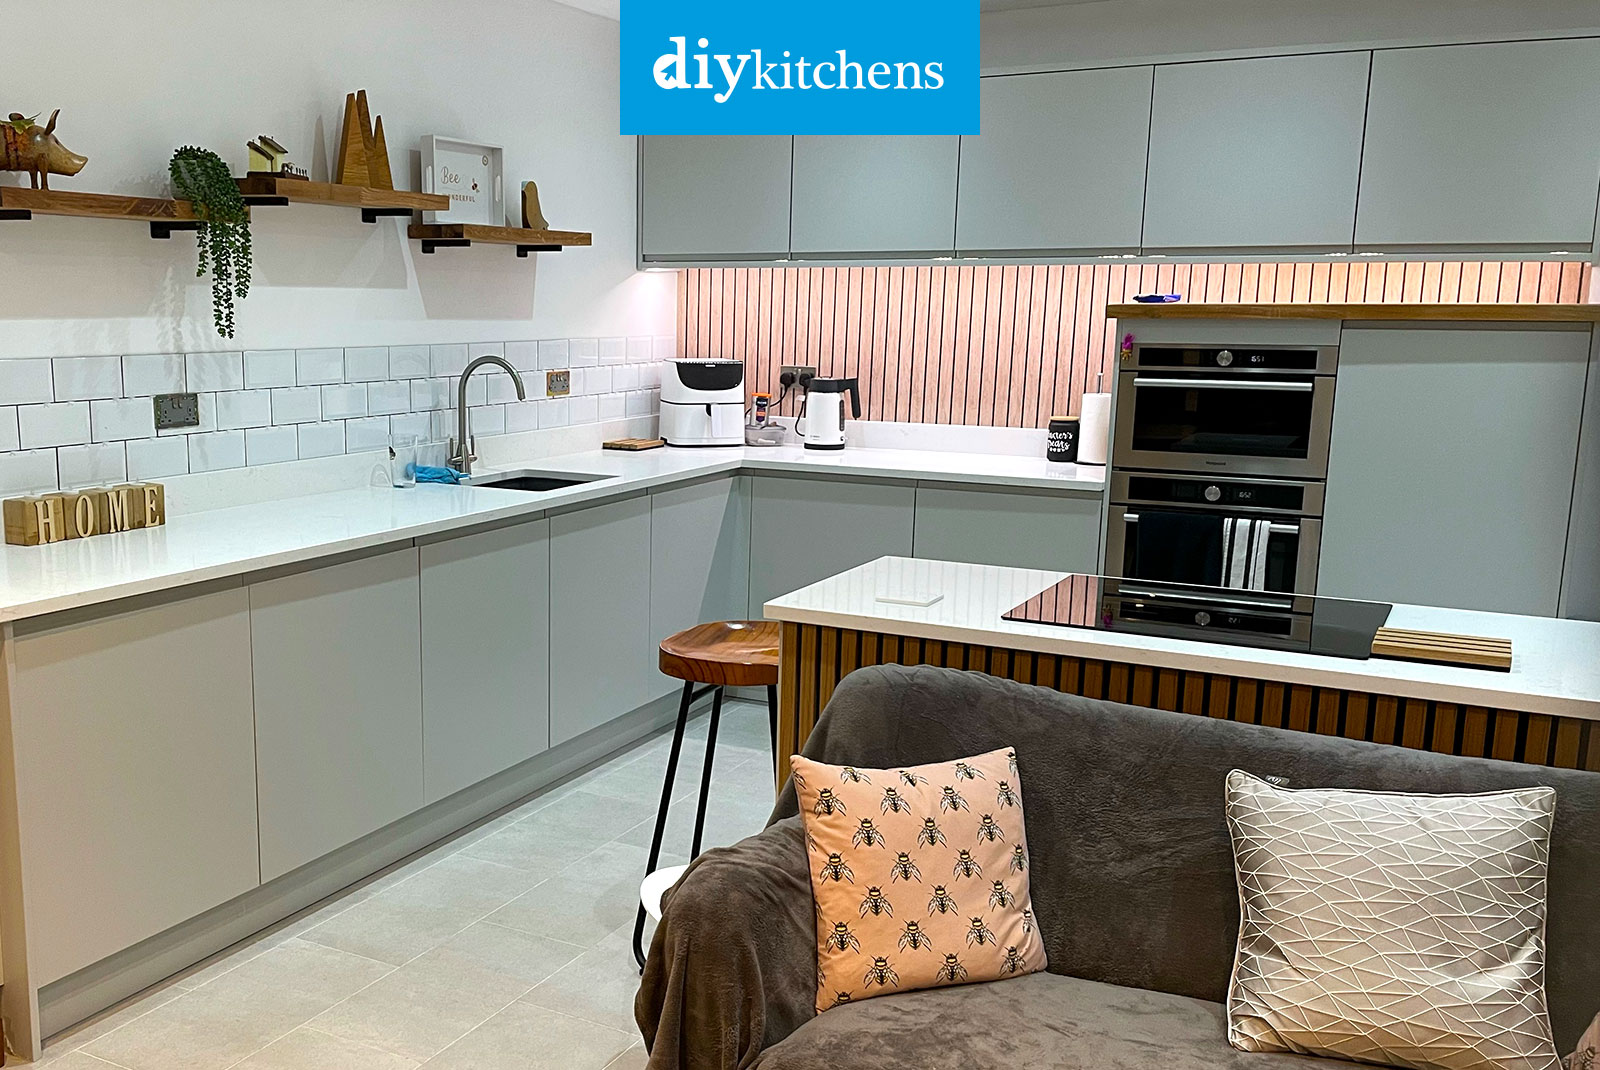 lave vaisselle - Recherche Google  Kitchen pantry design, Pantry design,  Home kitchens